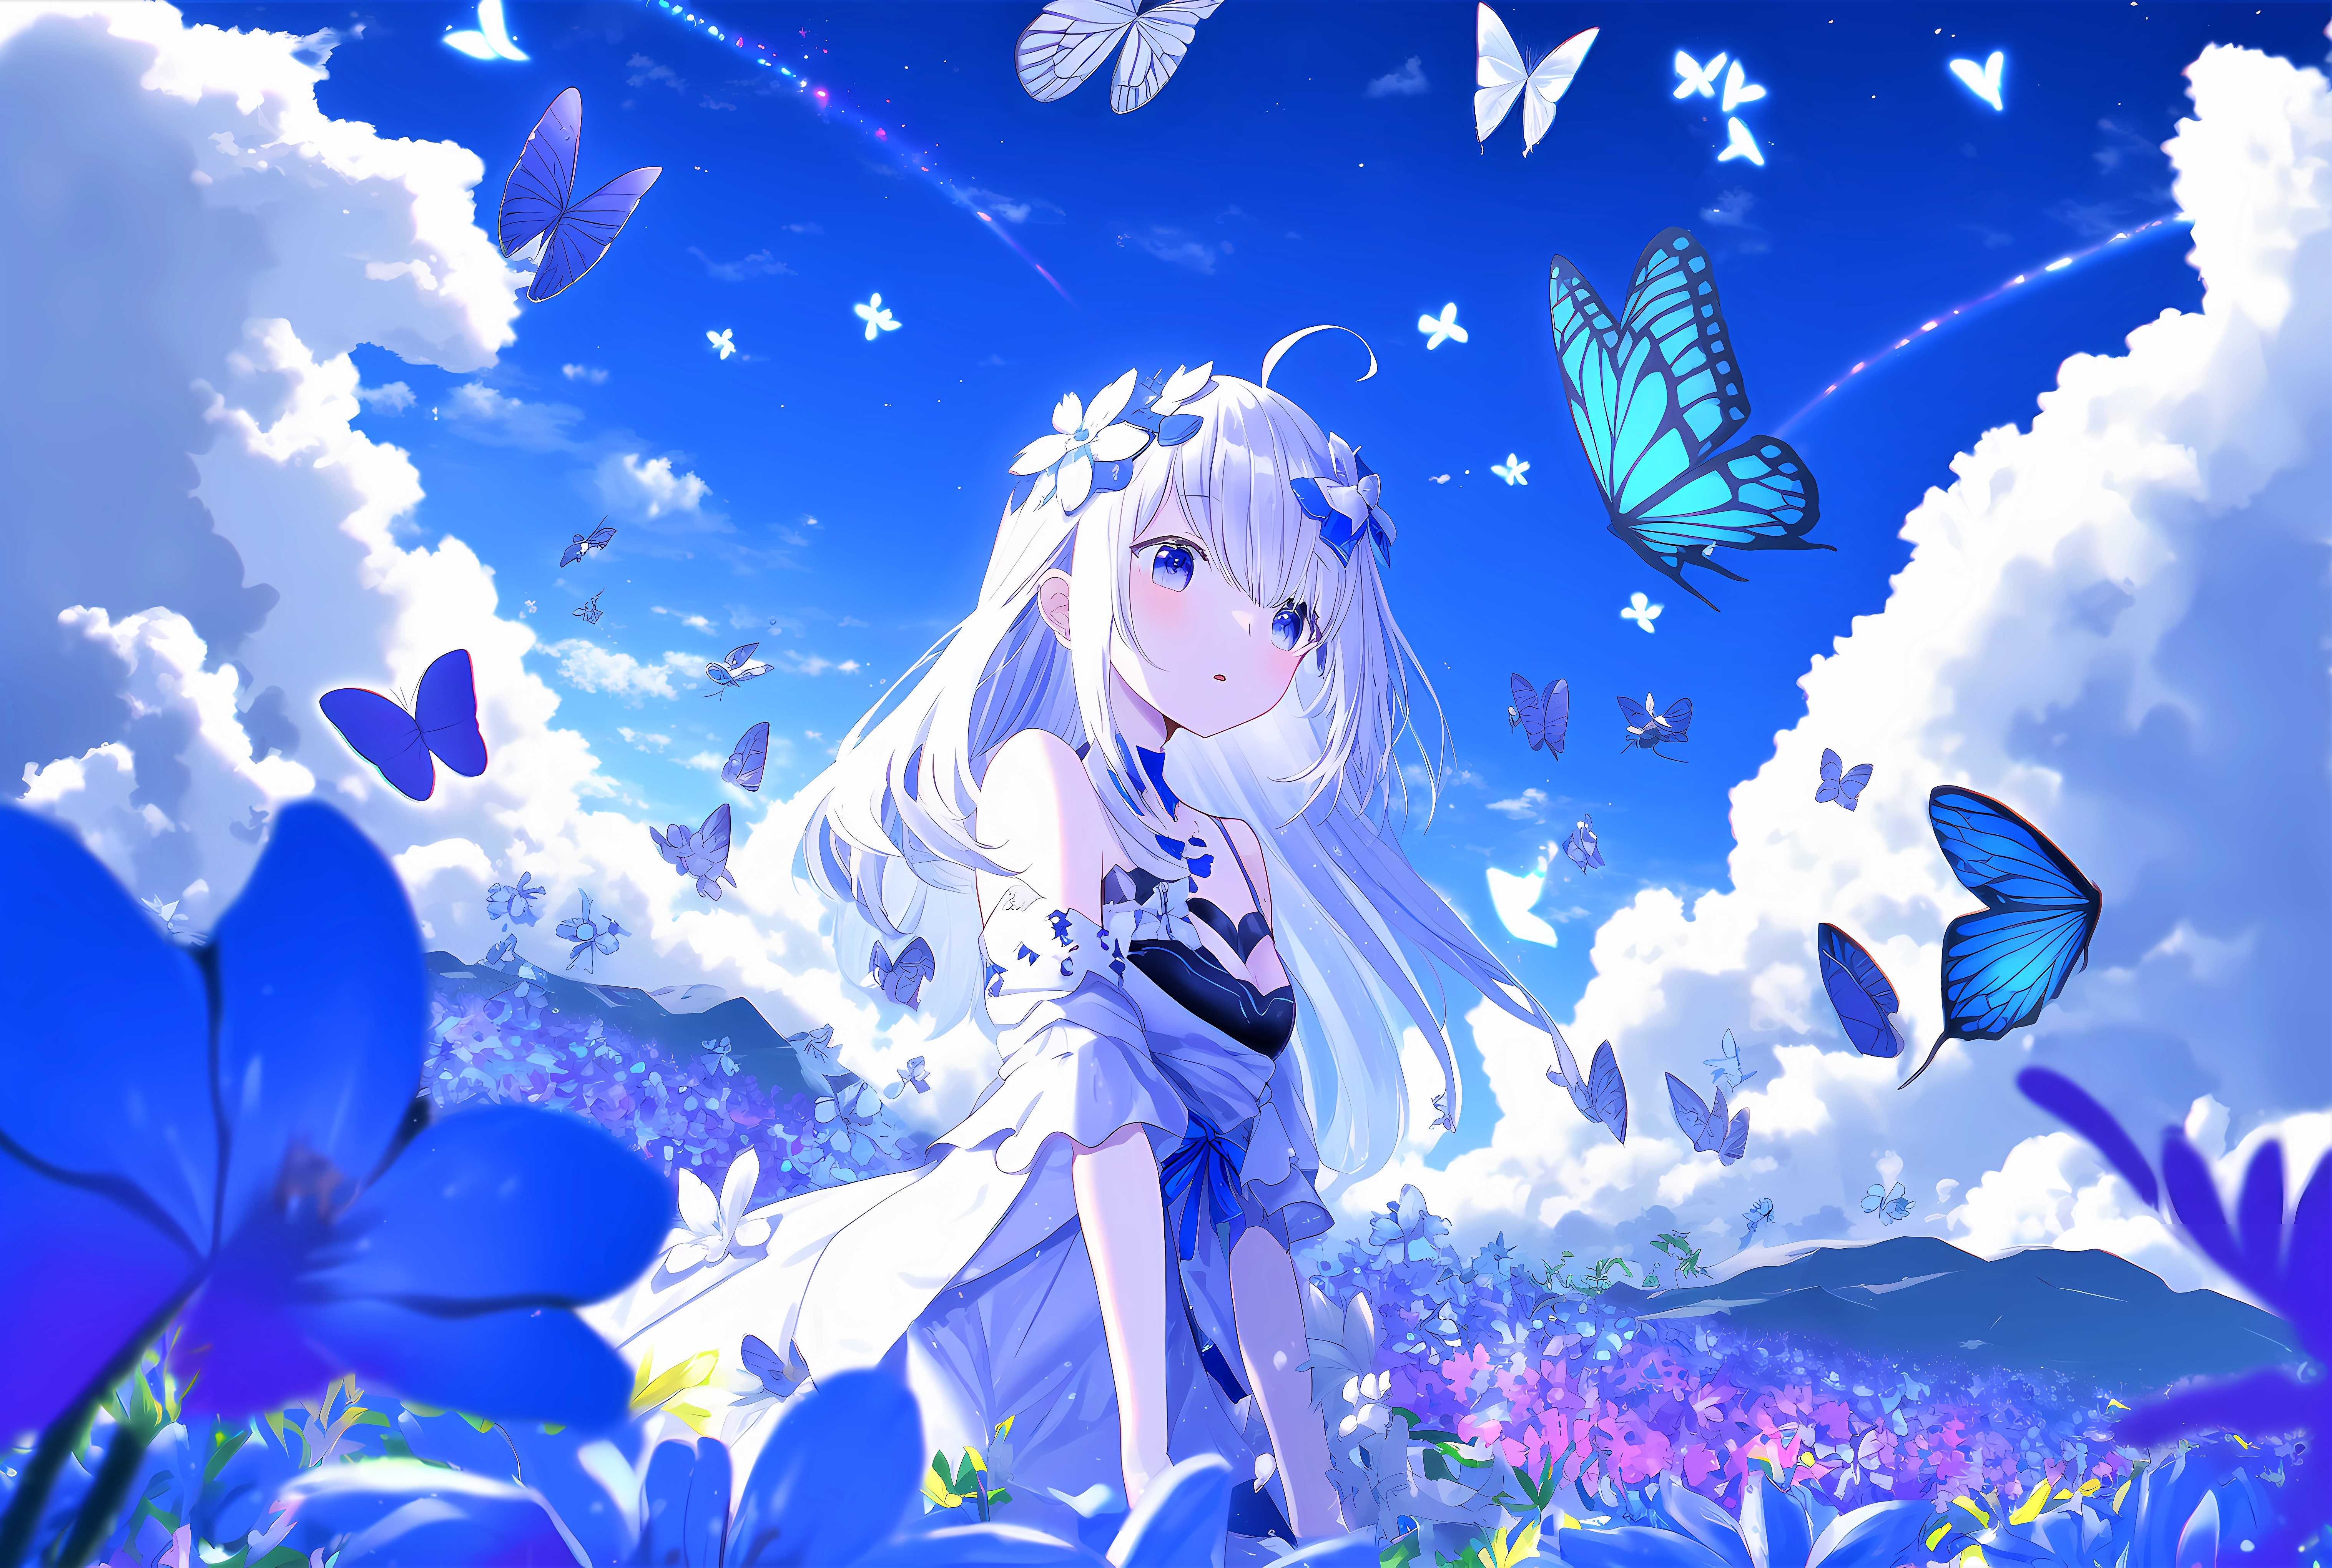 Teen Wallpaper 4K, Anime girl, Dream, Butterflies, #10029